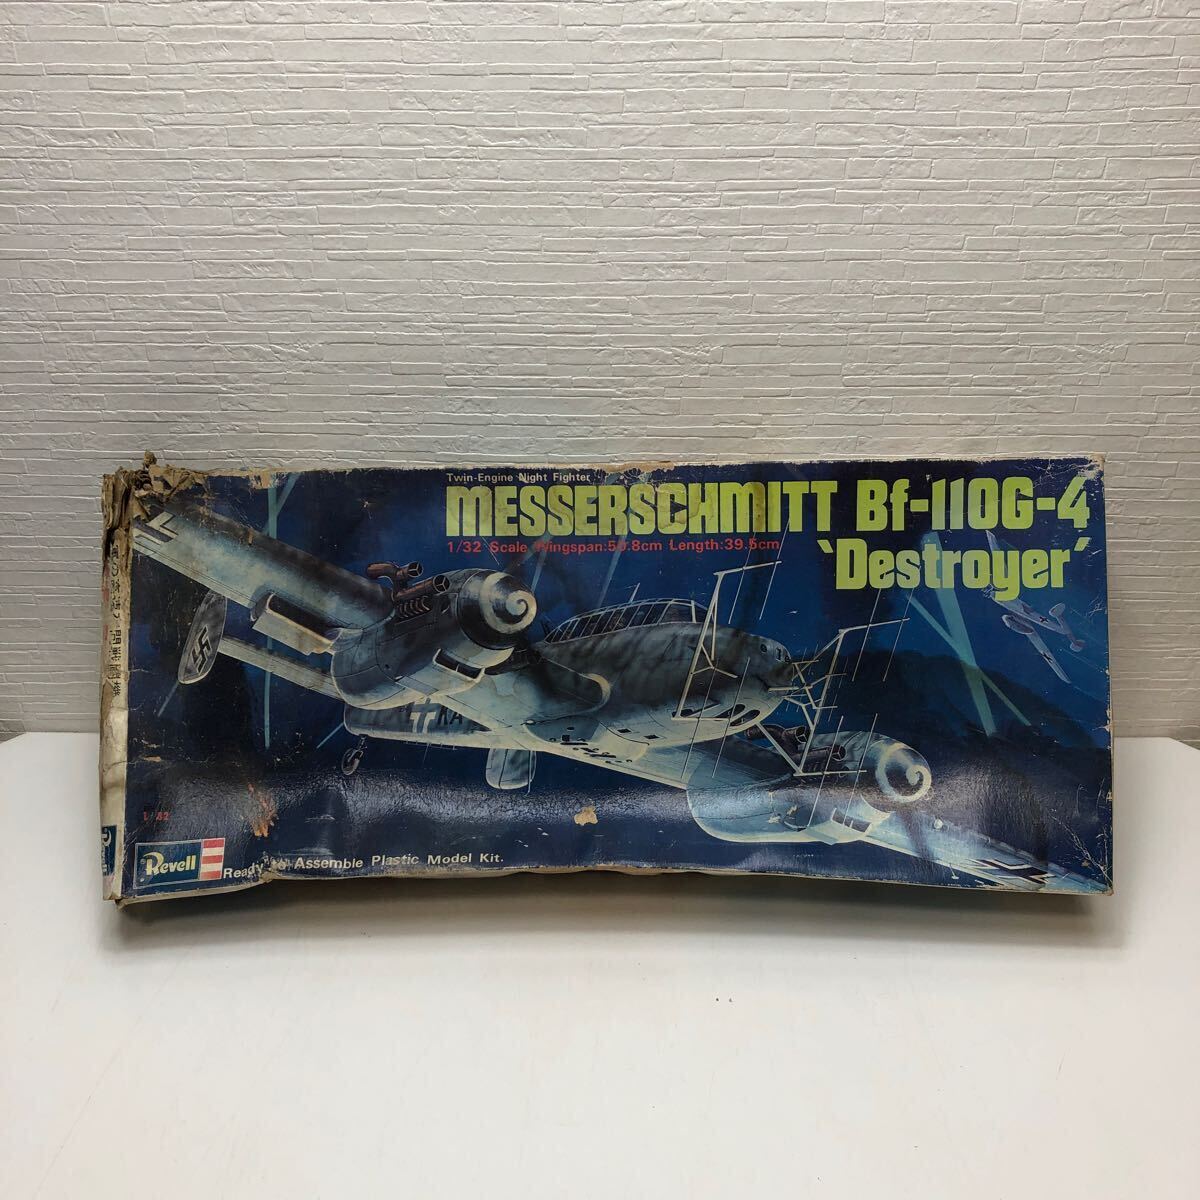  распродажа!1 иен старт! Revell Revell 1/32 Messerschmitt Bf-110G-4 Германия ВВС. высокая скорость вечер истребитель распроданный подлинная вещь большой пластиковая модель 